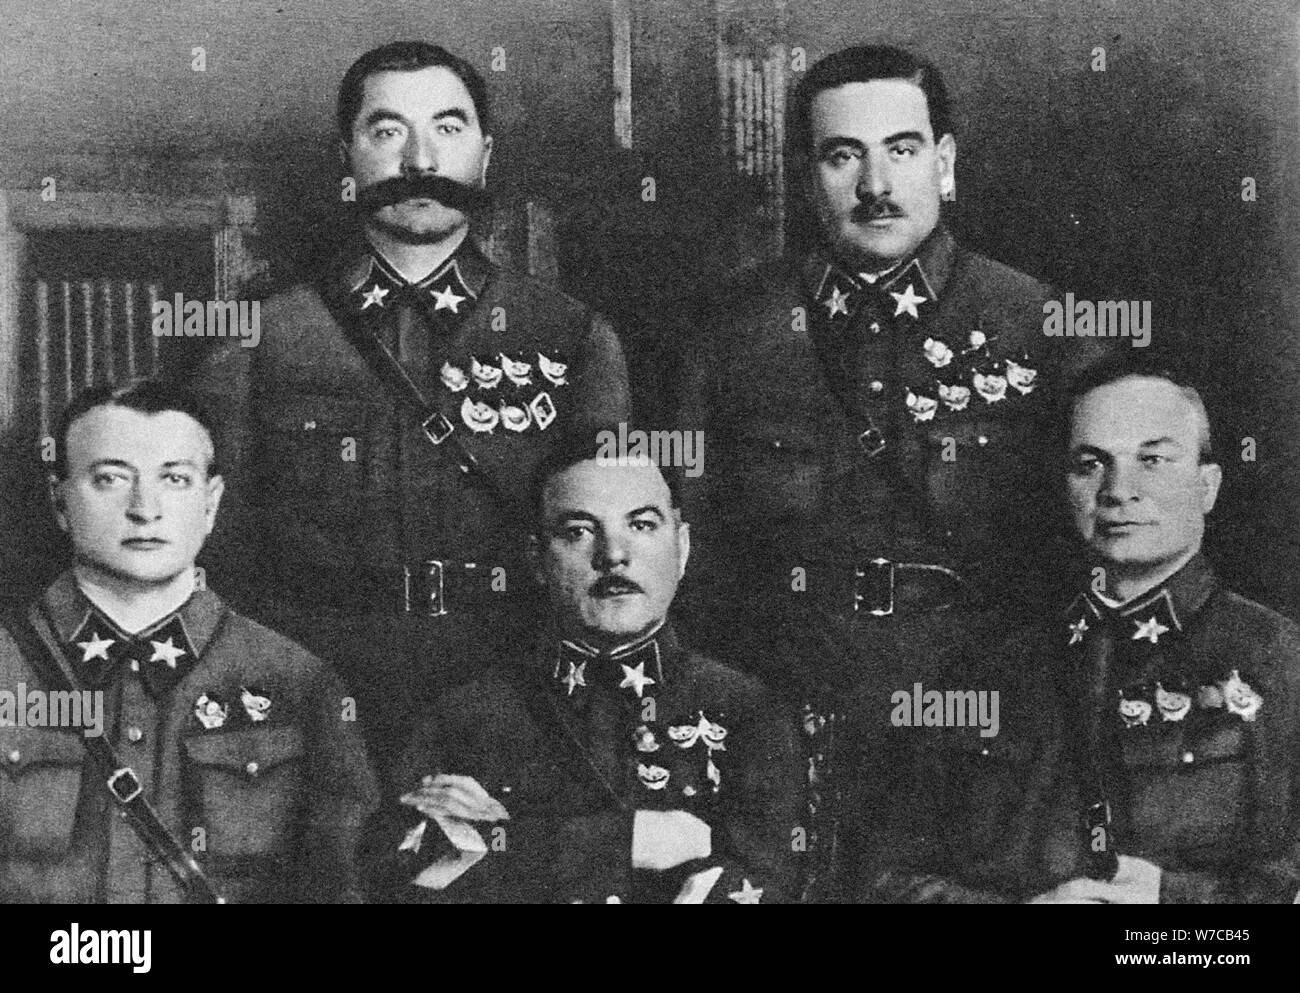 First 5 Marshals of USSR: Tukhachevsky, Budyonny, Voroshilov, Blyukher, Yegorov, 1935. Stock Photo